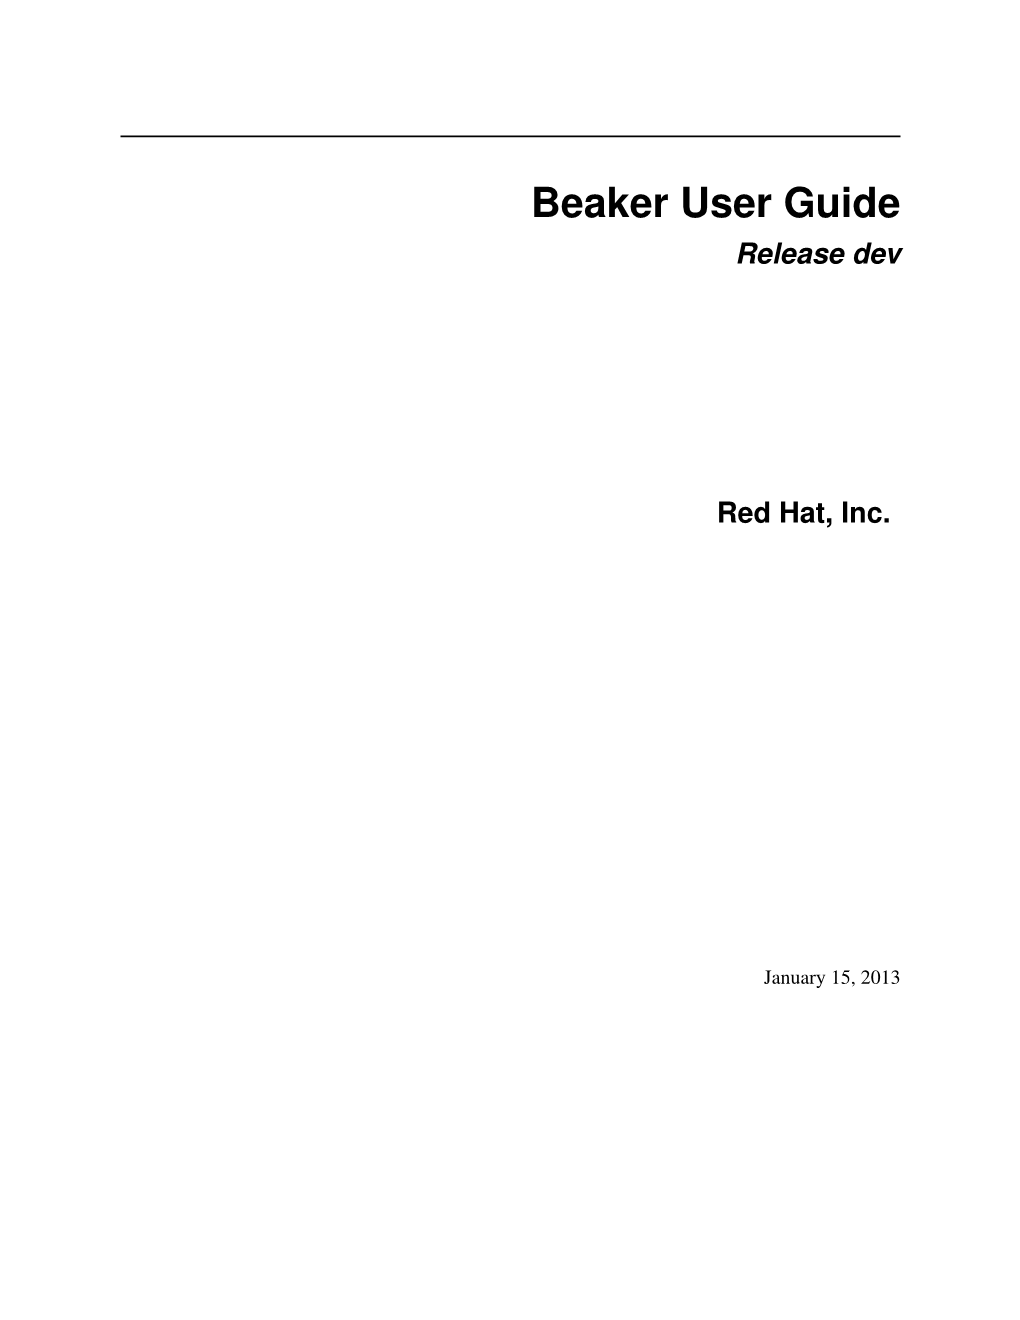 Beaker User Guide Release Dev